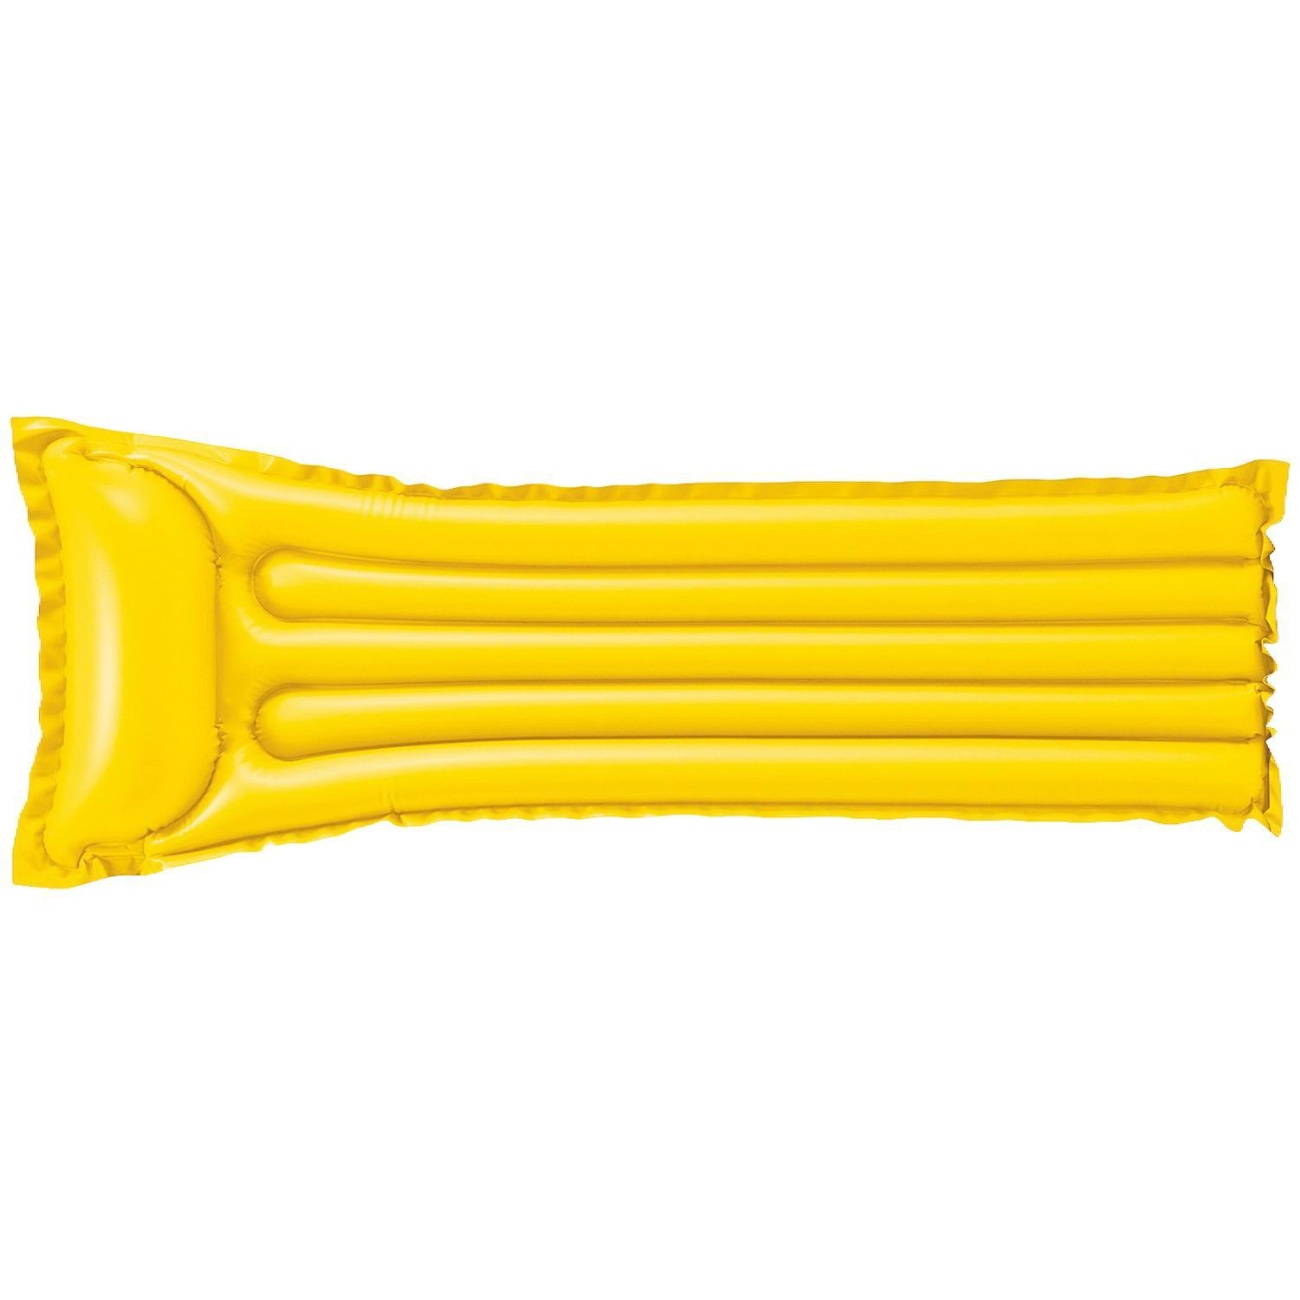 Матрас надувной INTEX Economats матовый желтый, 183x69 см int59703NP/желтый